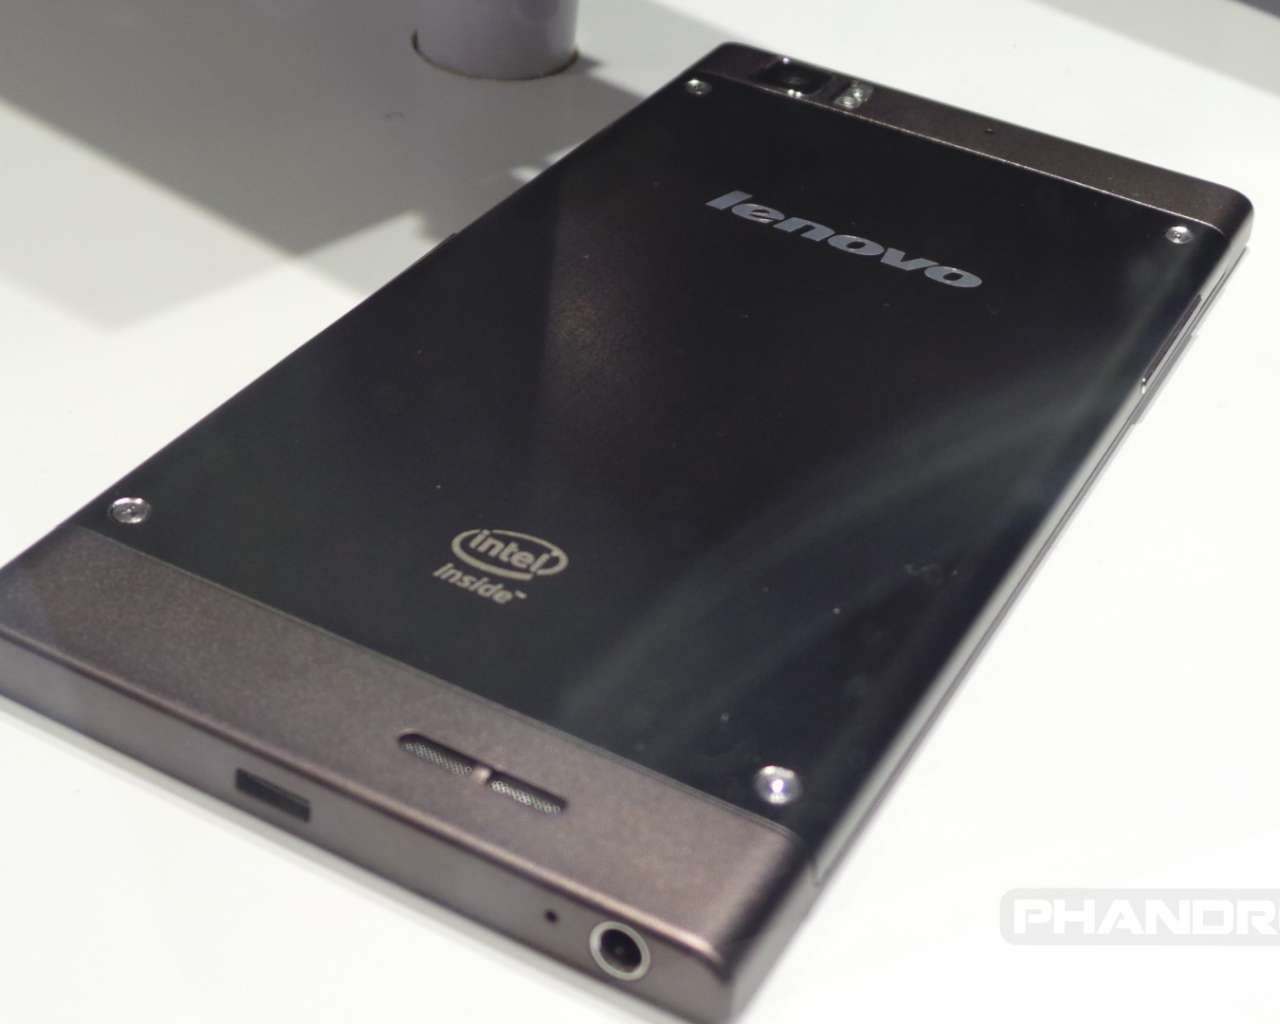 Корпус смартфона Lenovo K900